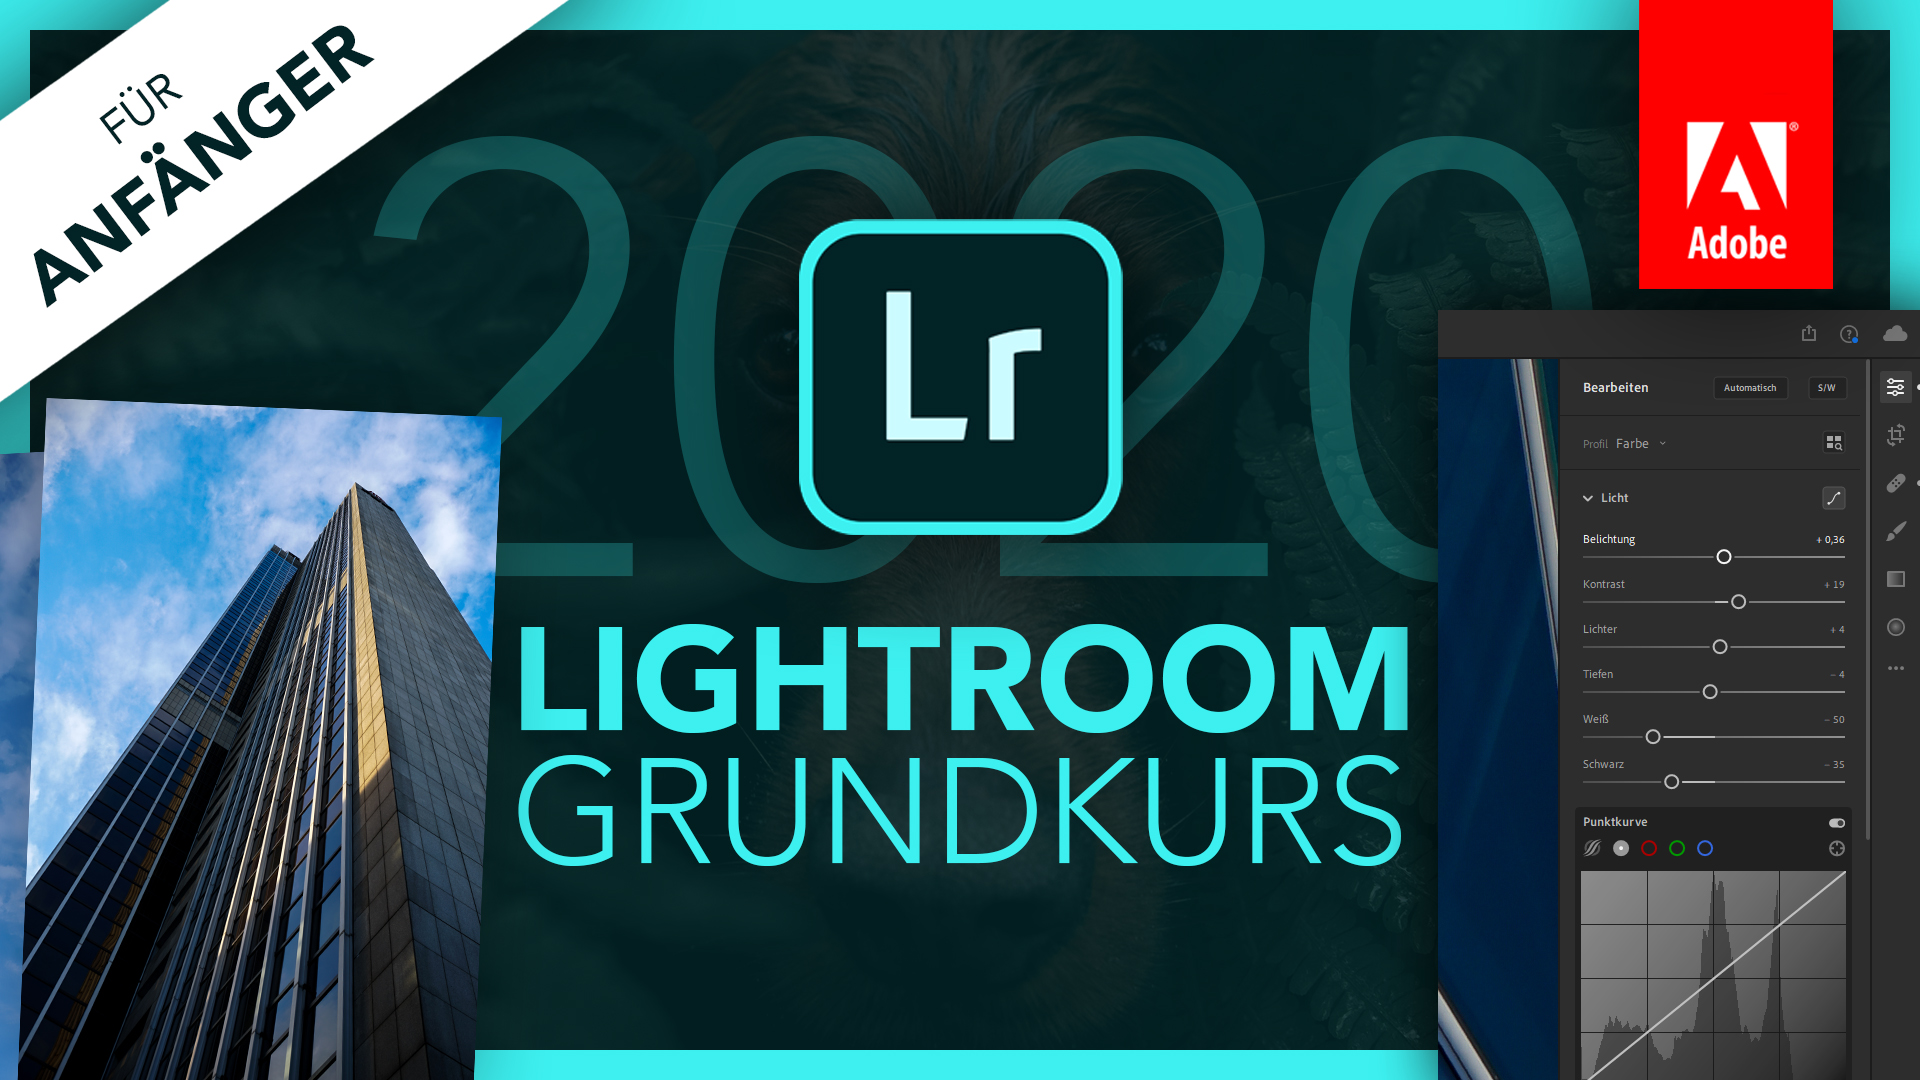 Adobe Lightroom 2020 (Grundkurs für Anfänger) Deutsch